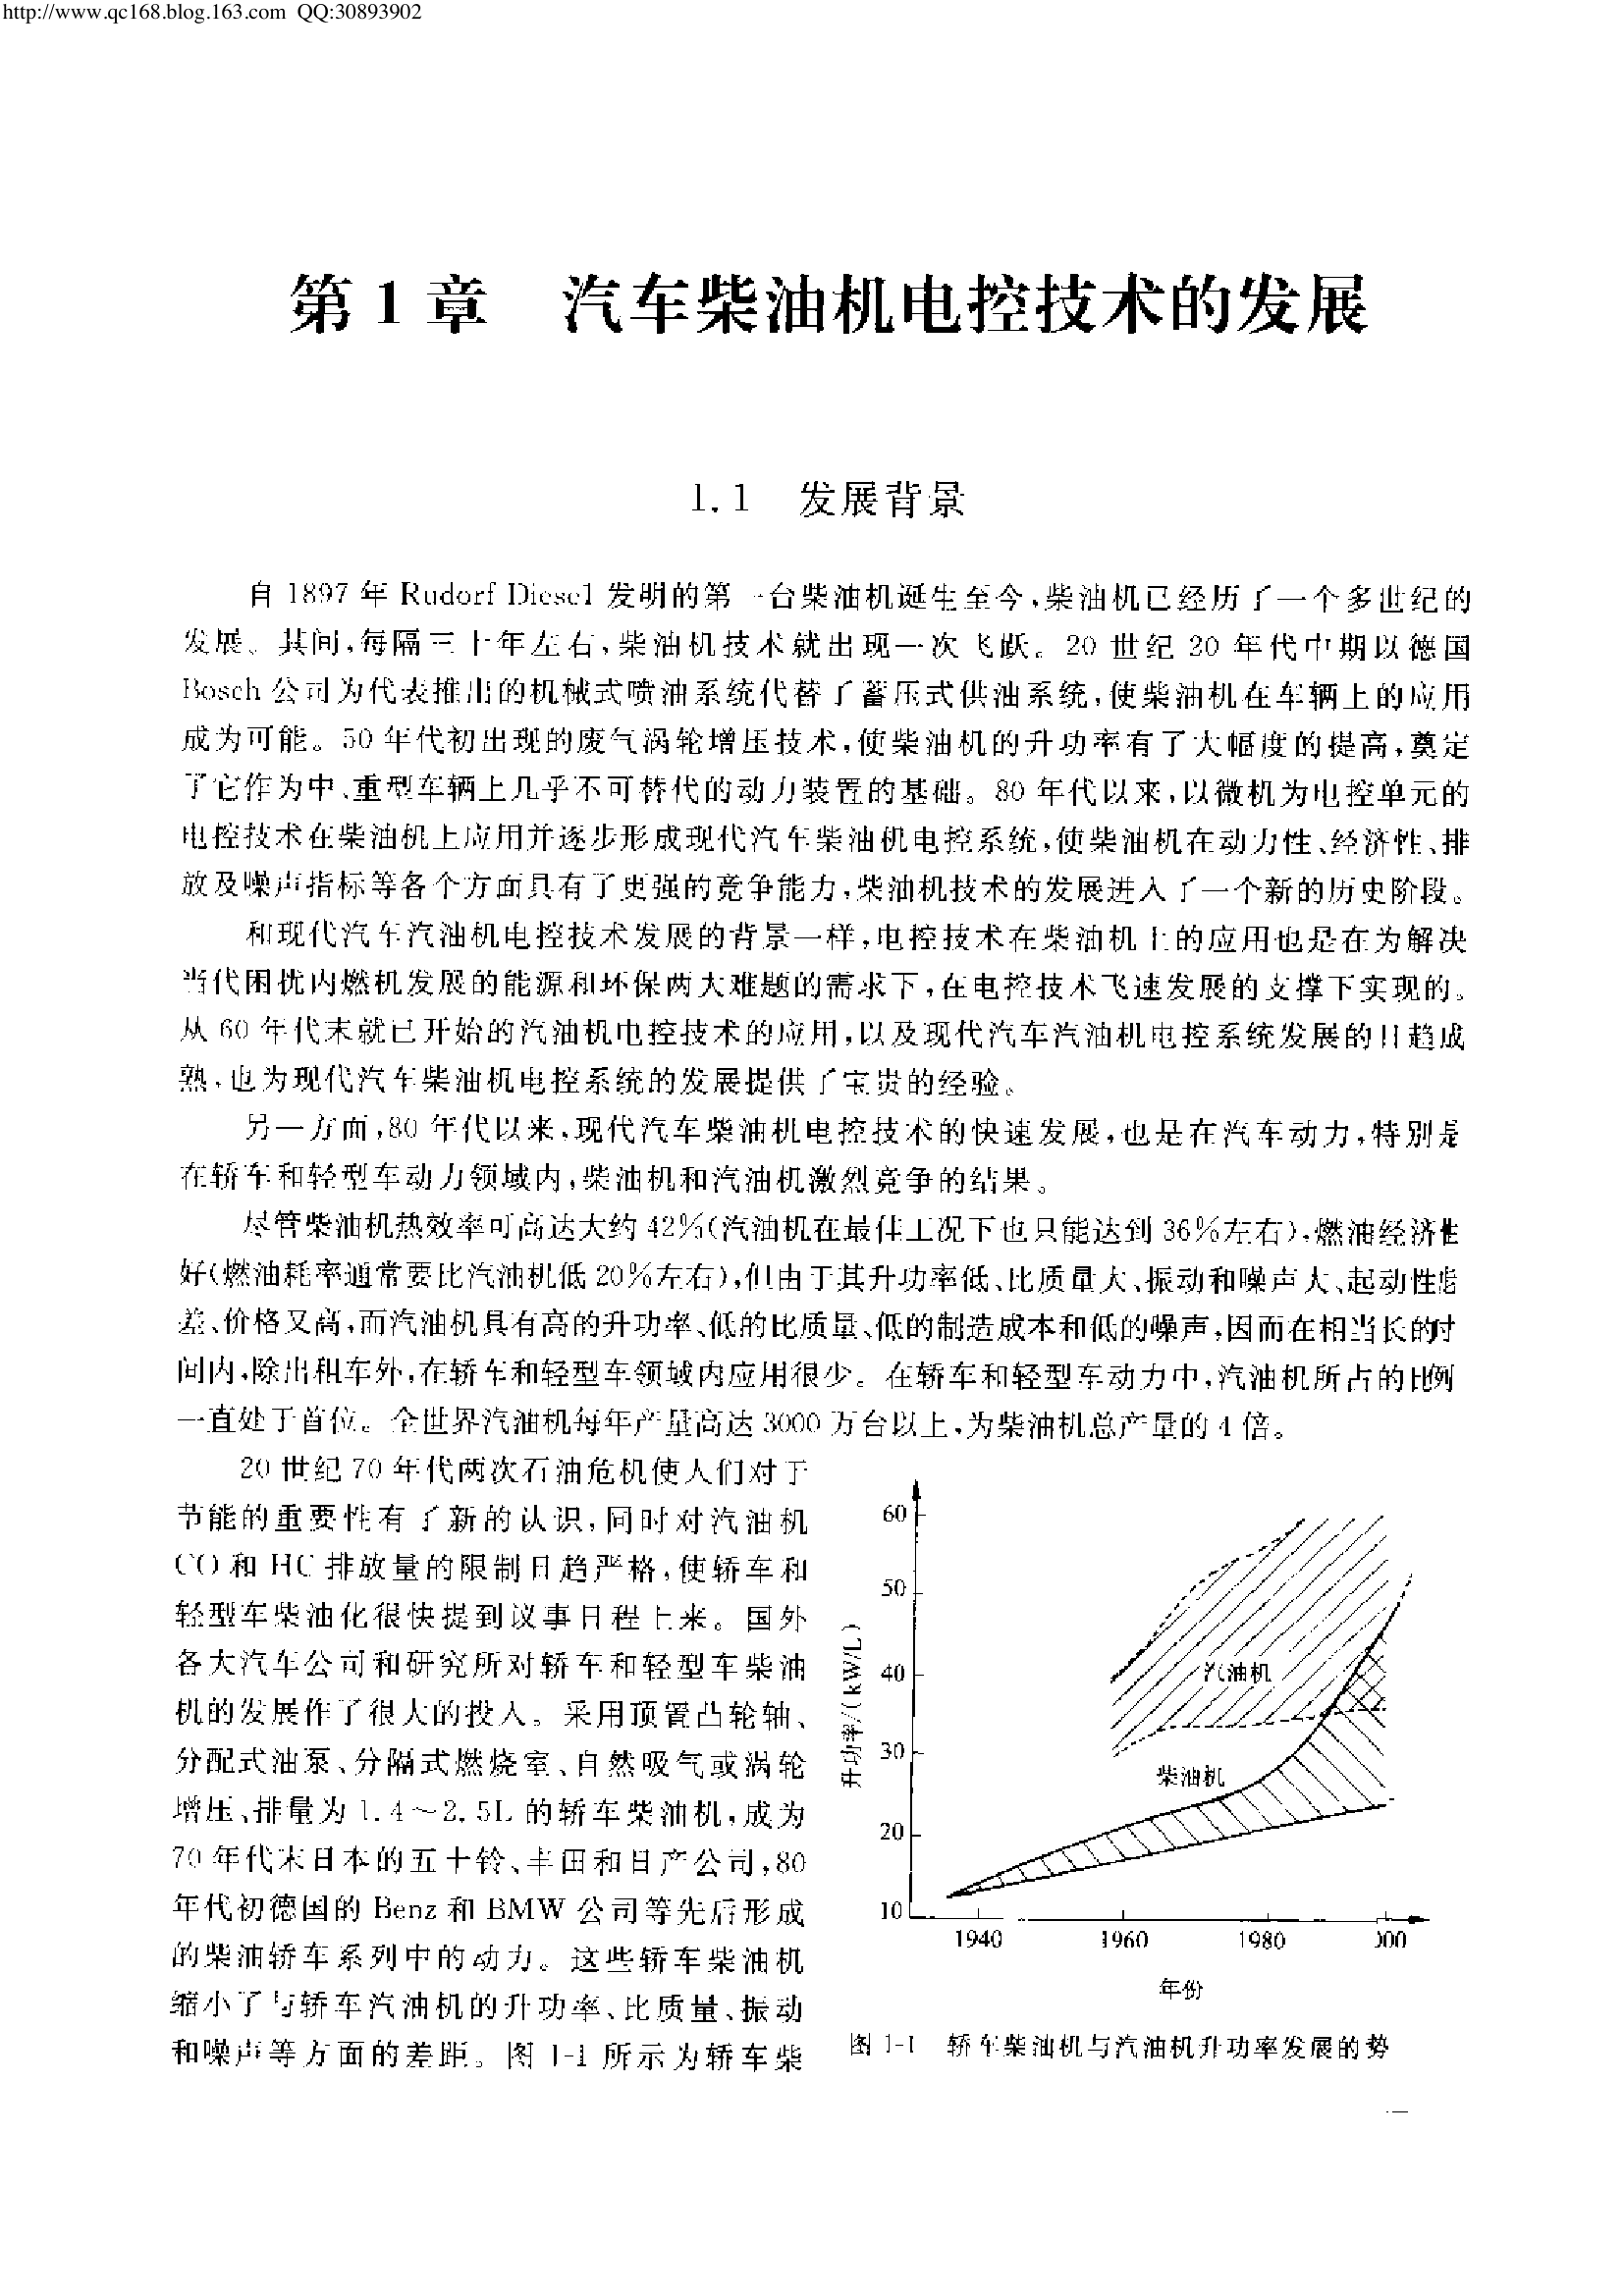 24.现代汽车柴油机电控系统.pdf-第7页.png